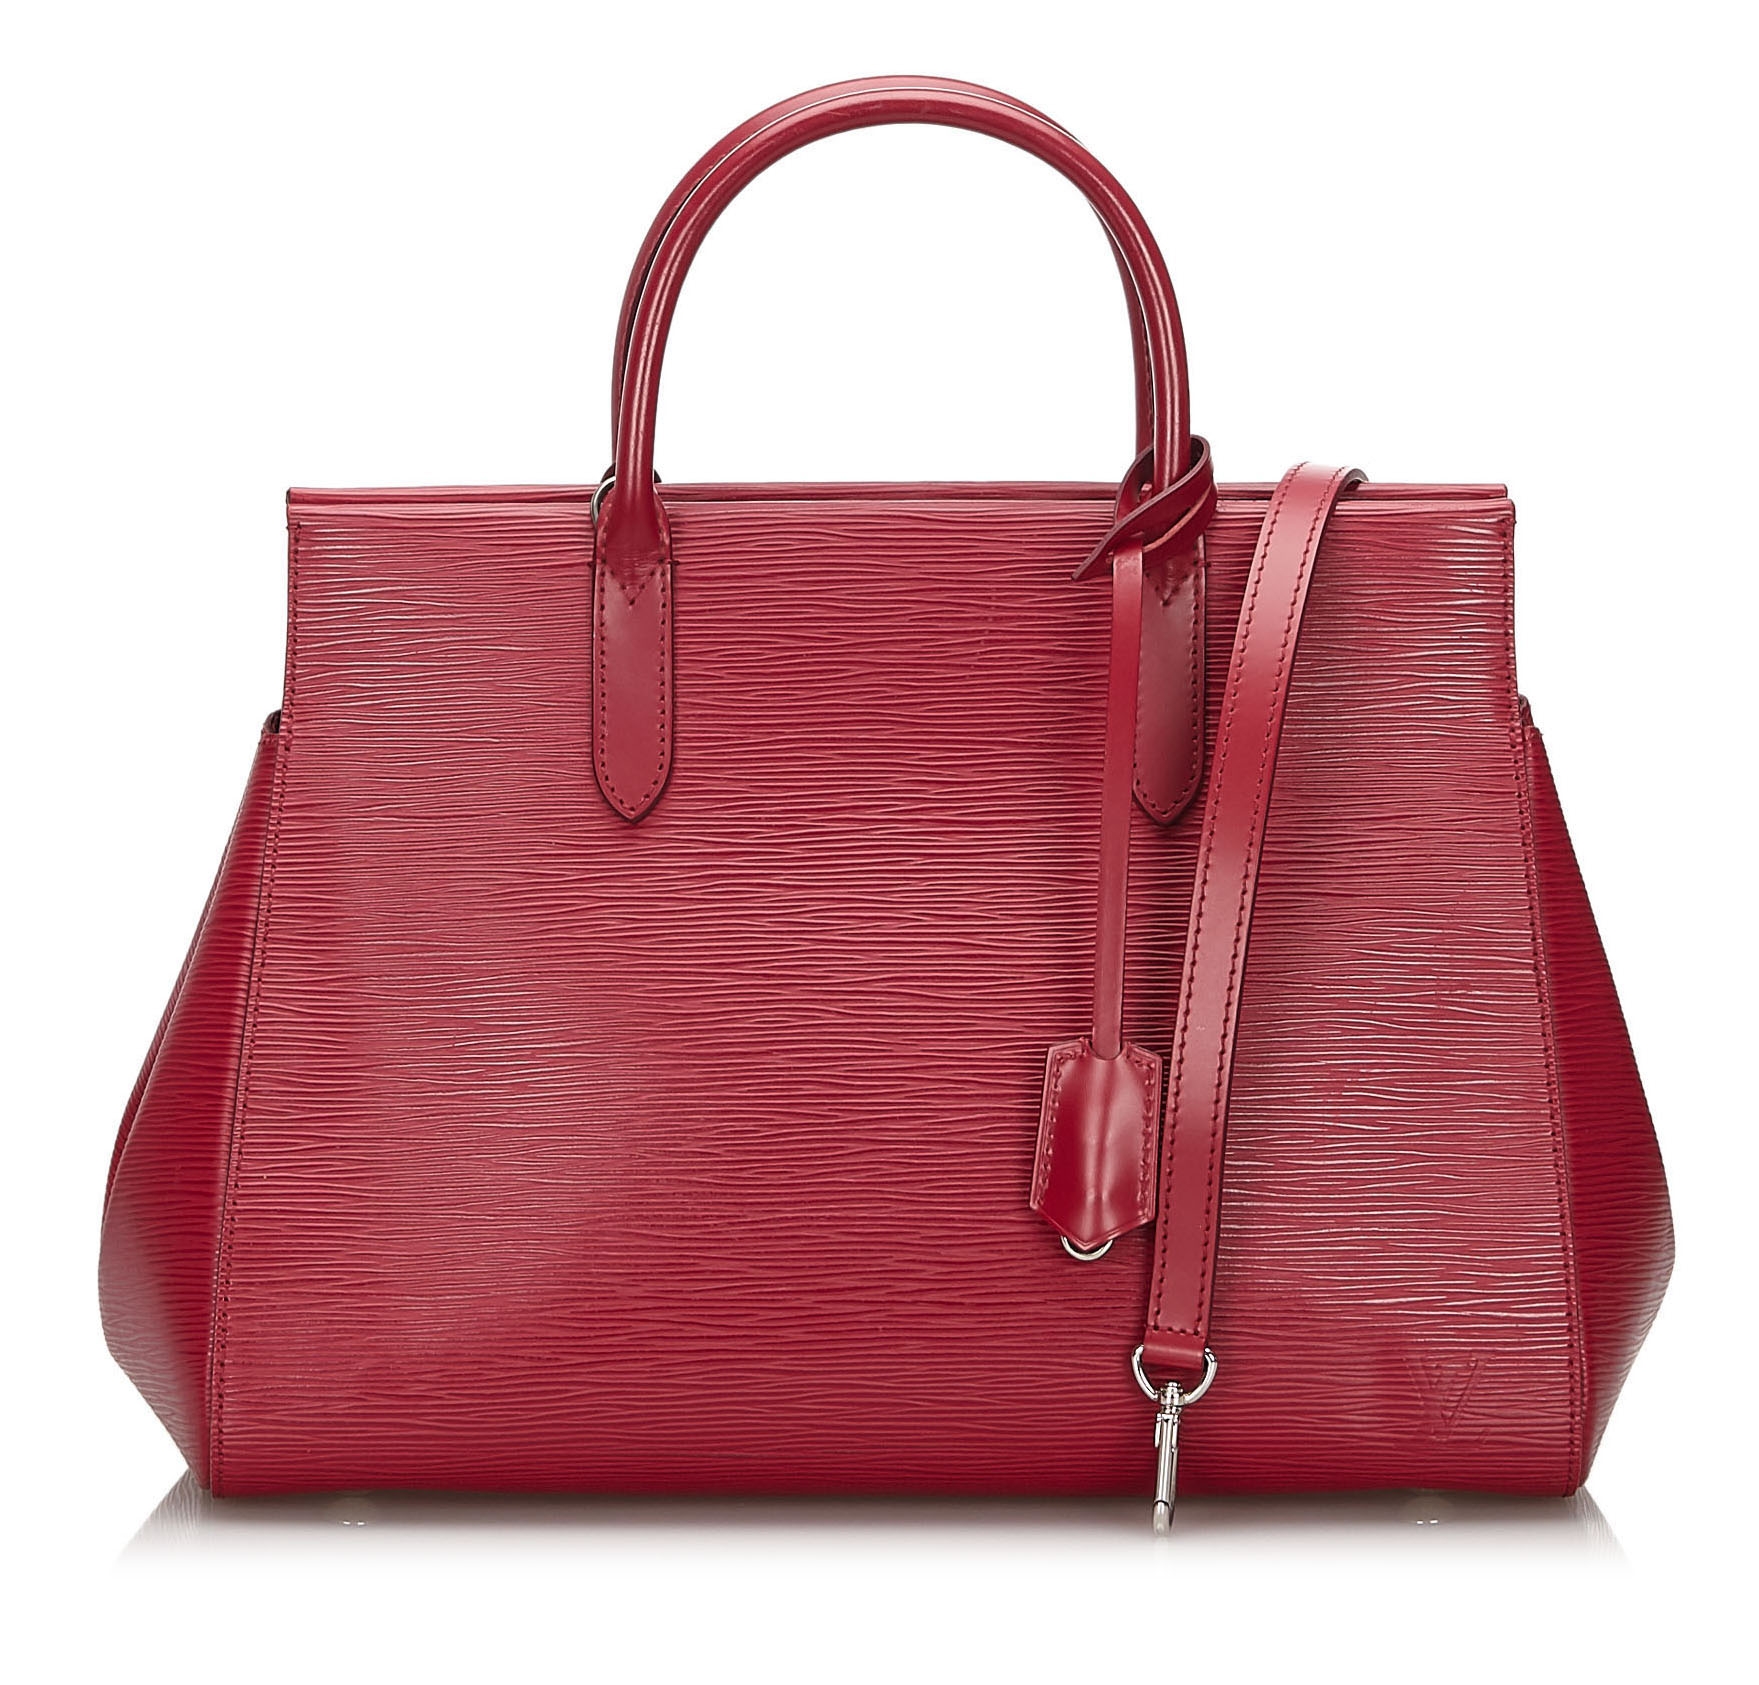 Borsa Louis Vuitton Turenne modello piccolo in pelle Epi rossa